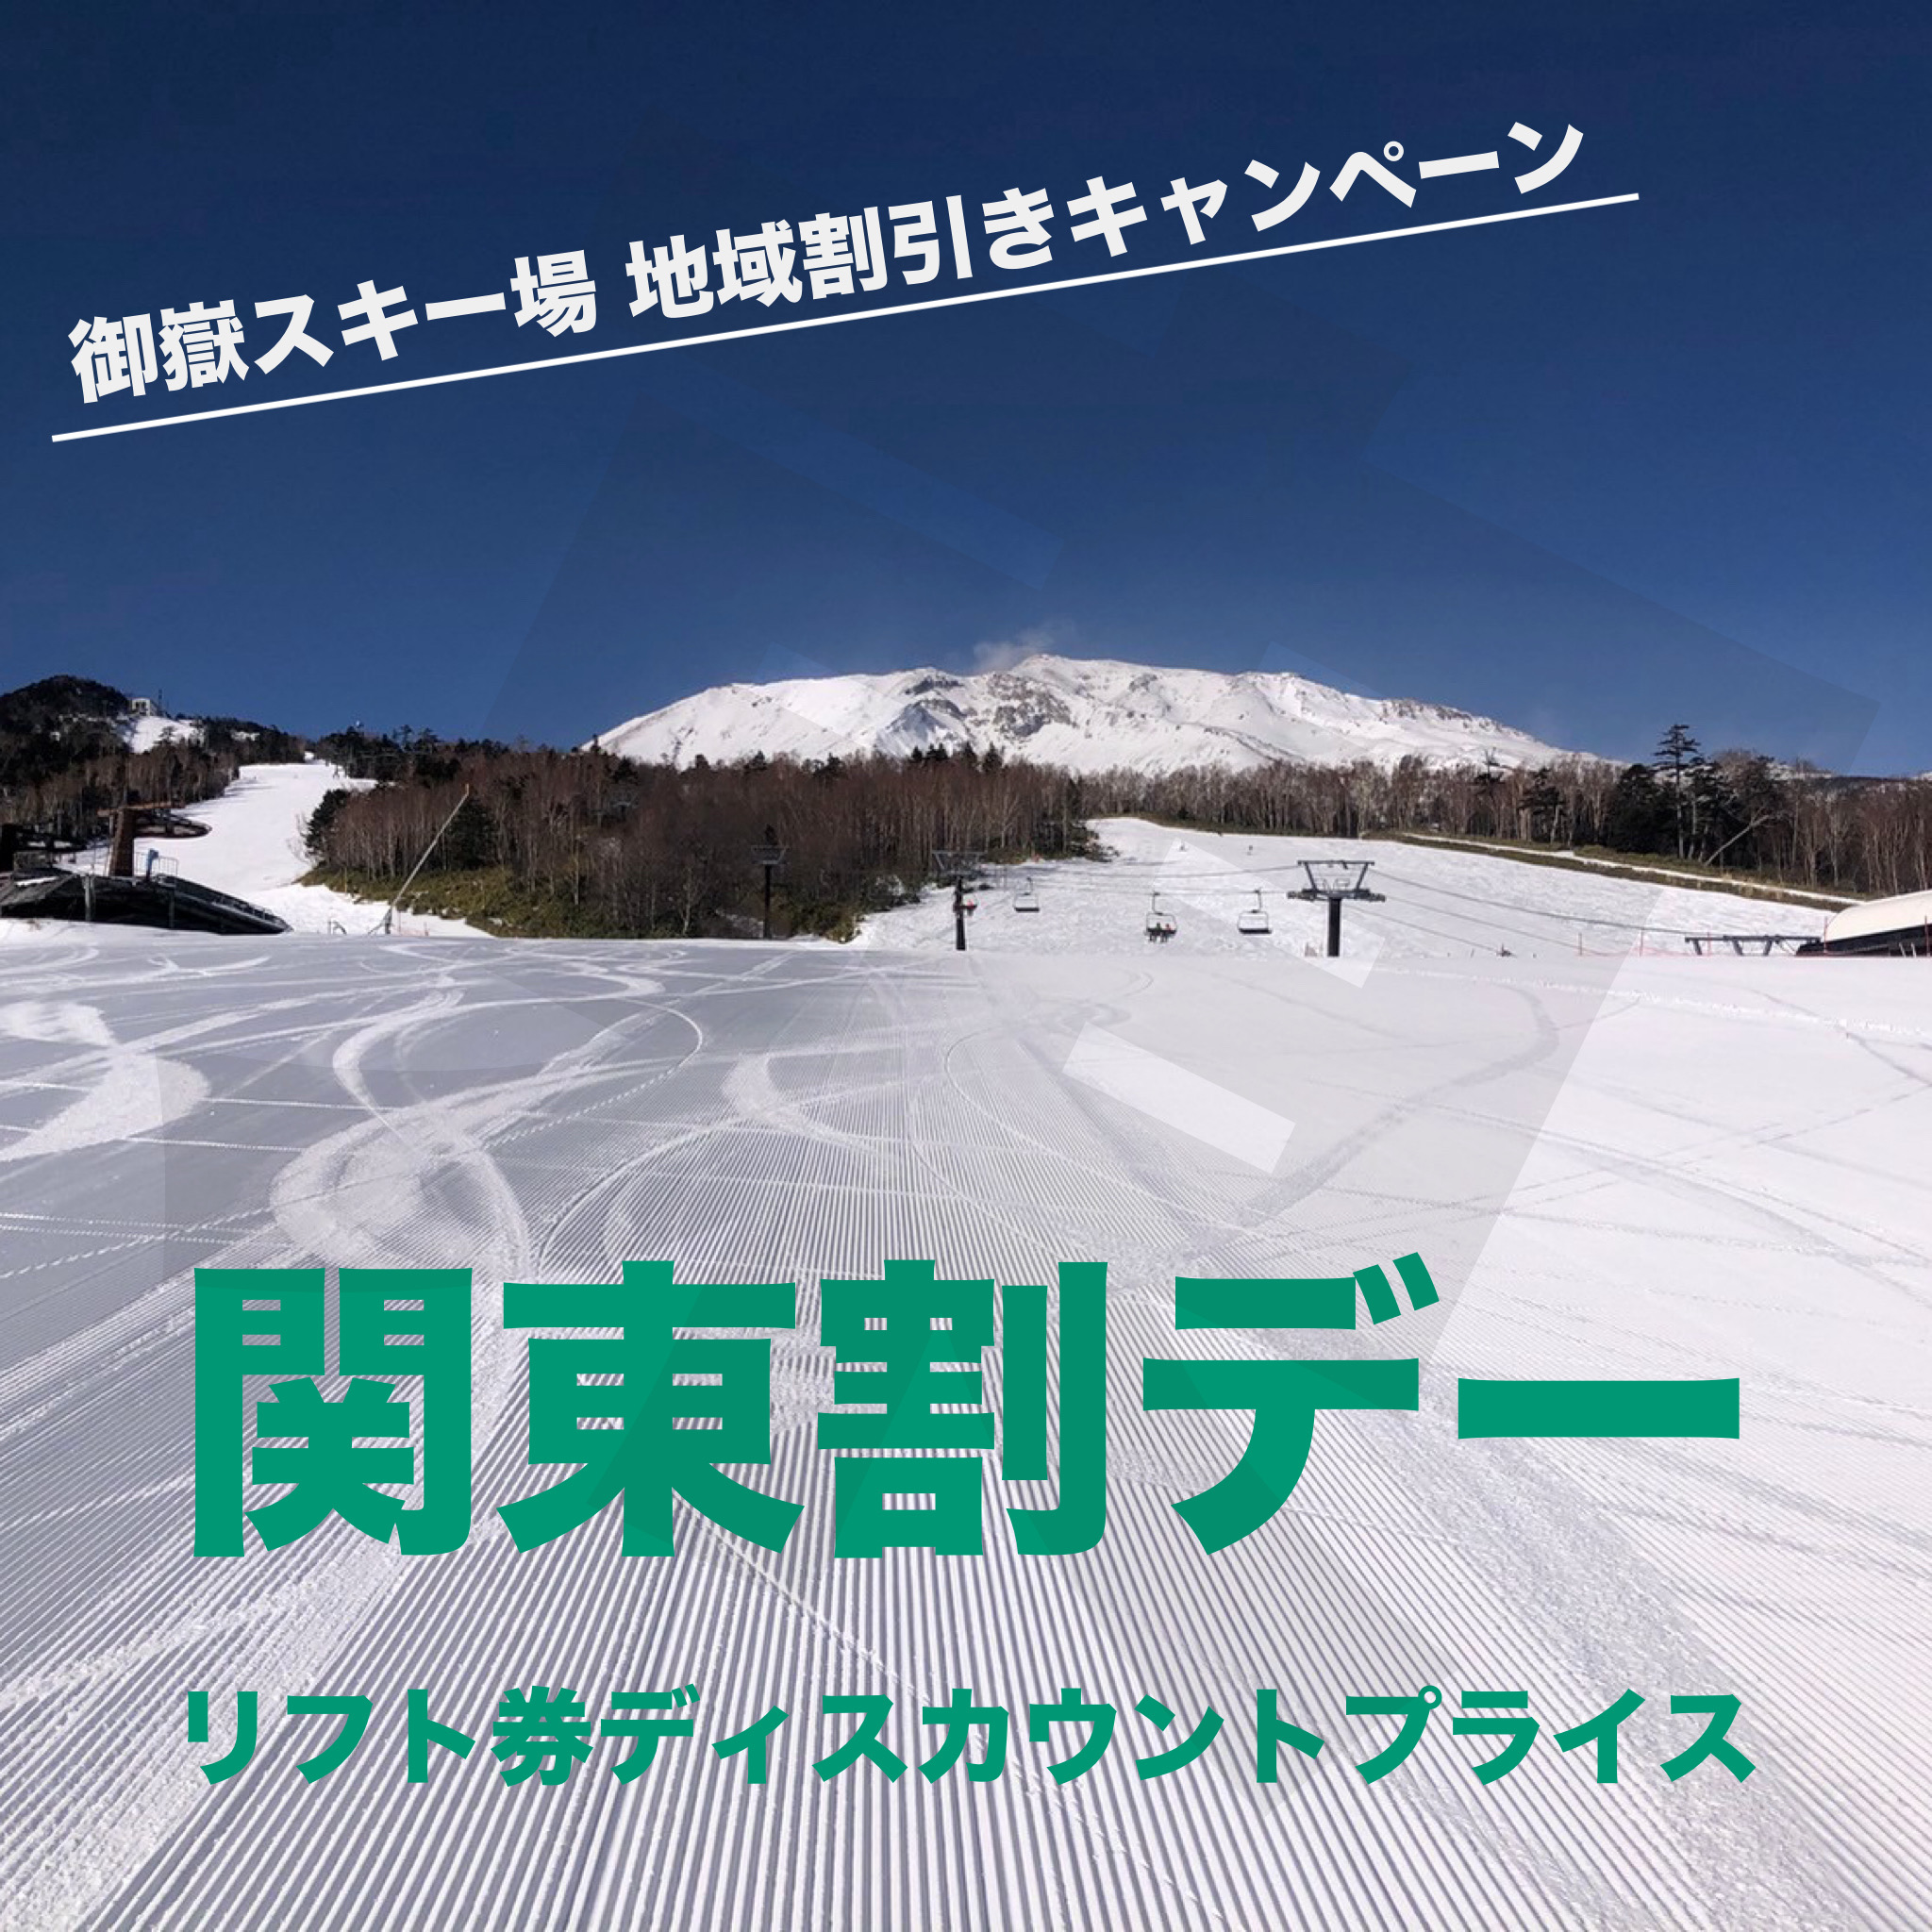 木曽福島スキー場 1日リフト招待券 - 邦画